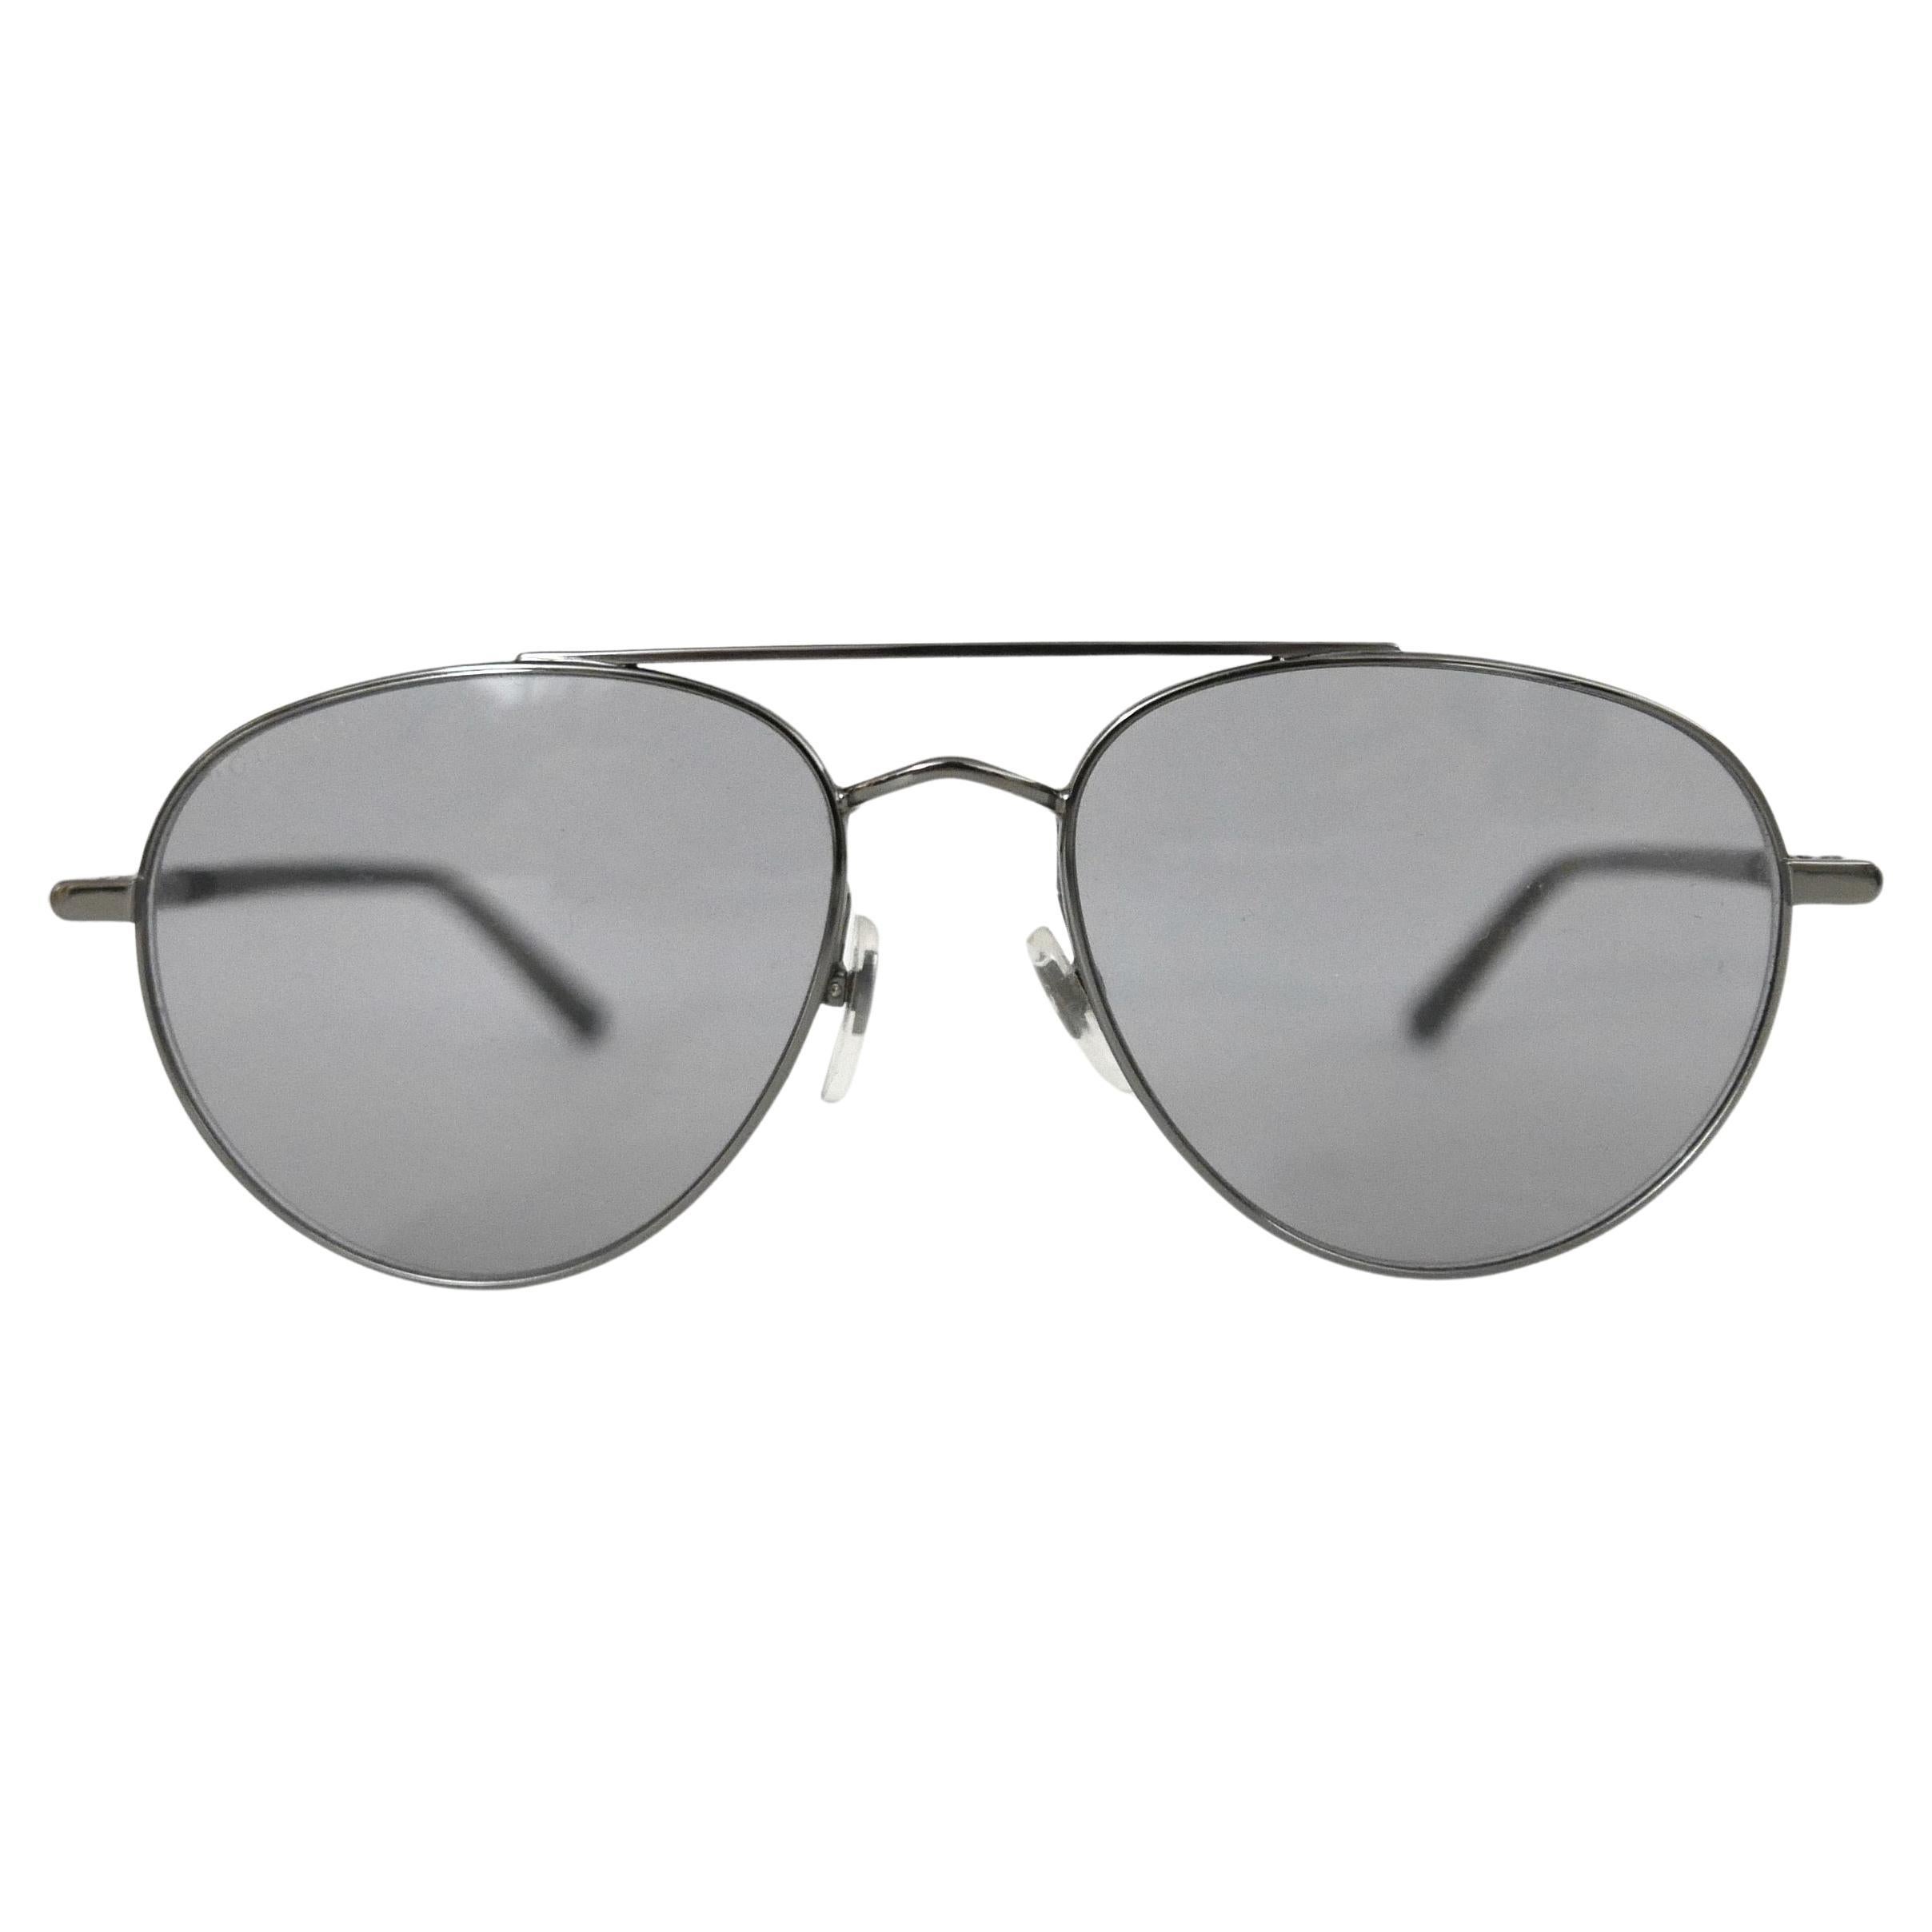 Gucci Silver Aviator Sunglasses GG0388S